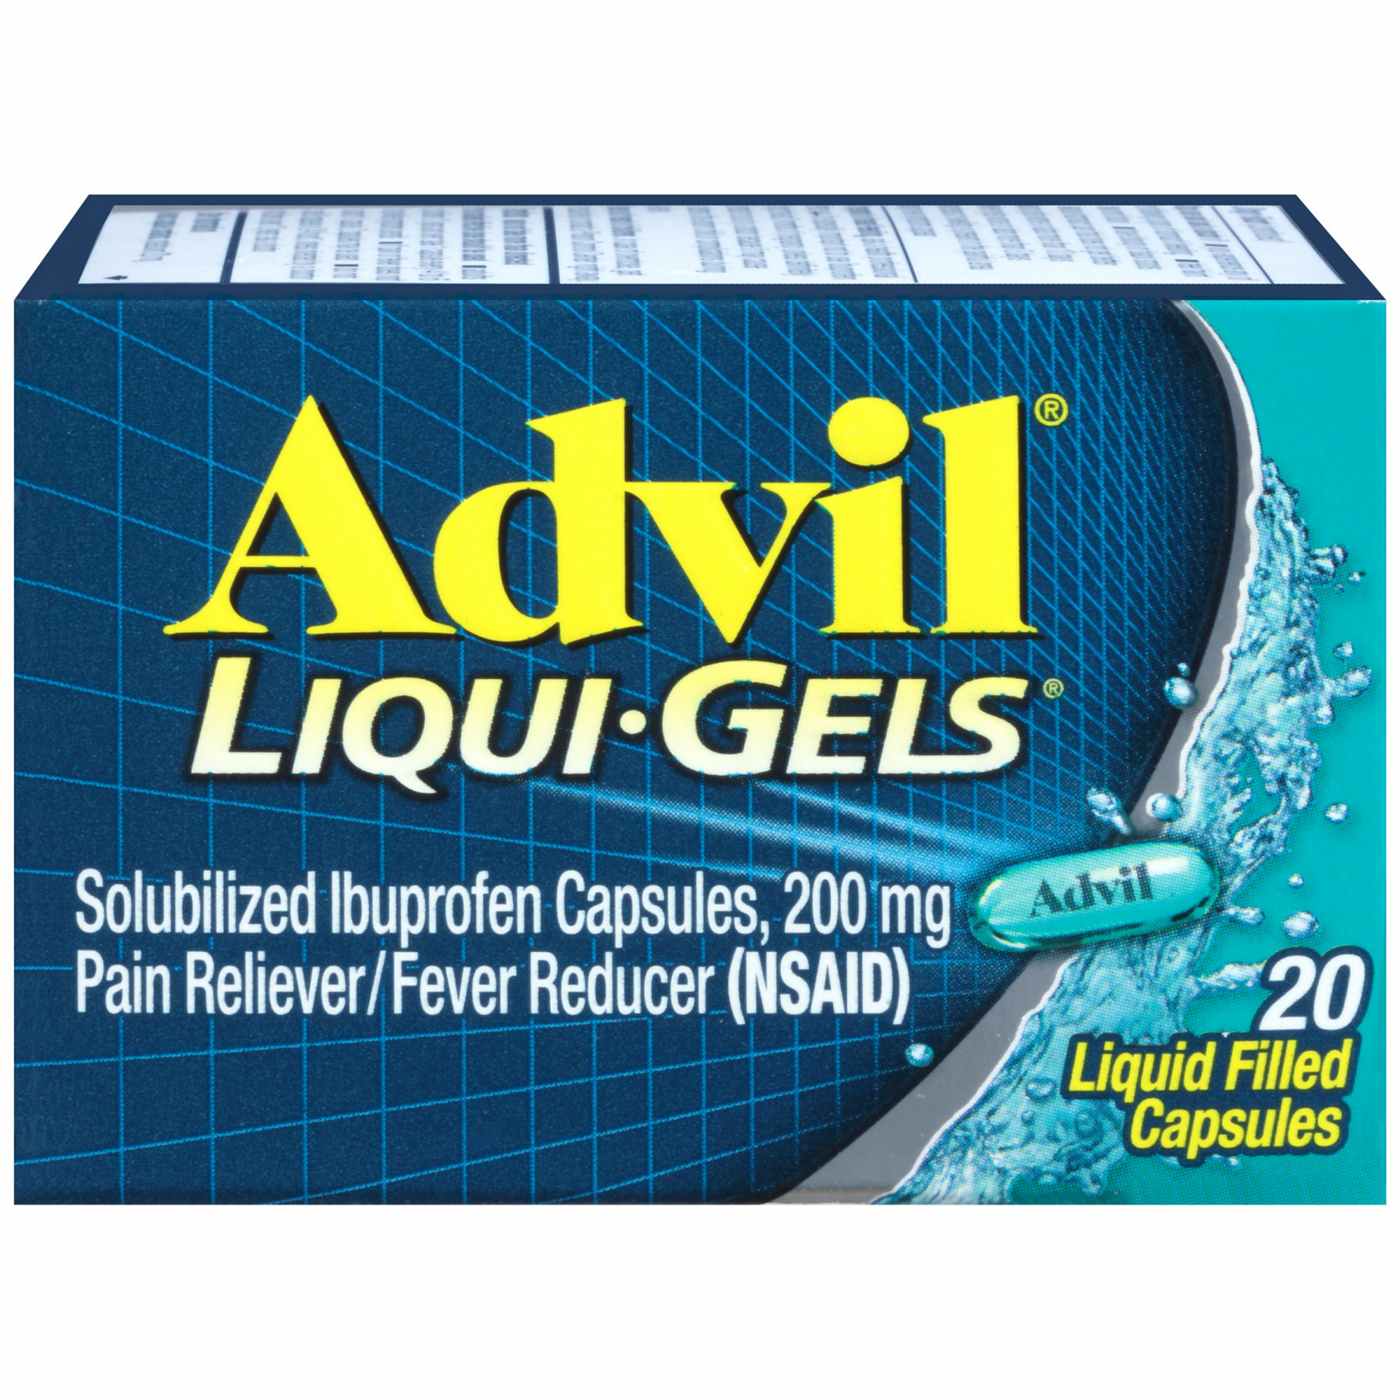 Advil Liqui-Gels Temporary Pain Relief Ibuprofen Liquid Filled Capsules; image 1 of 8